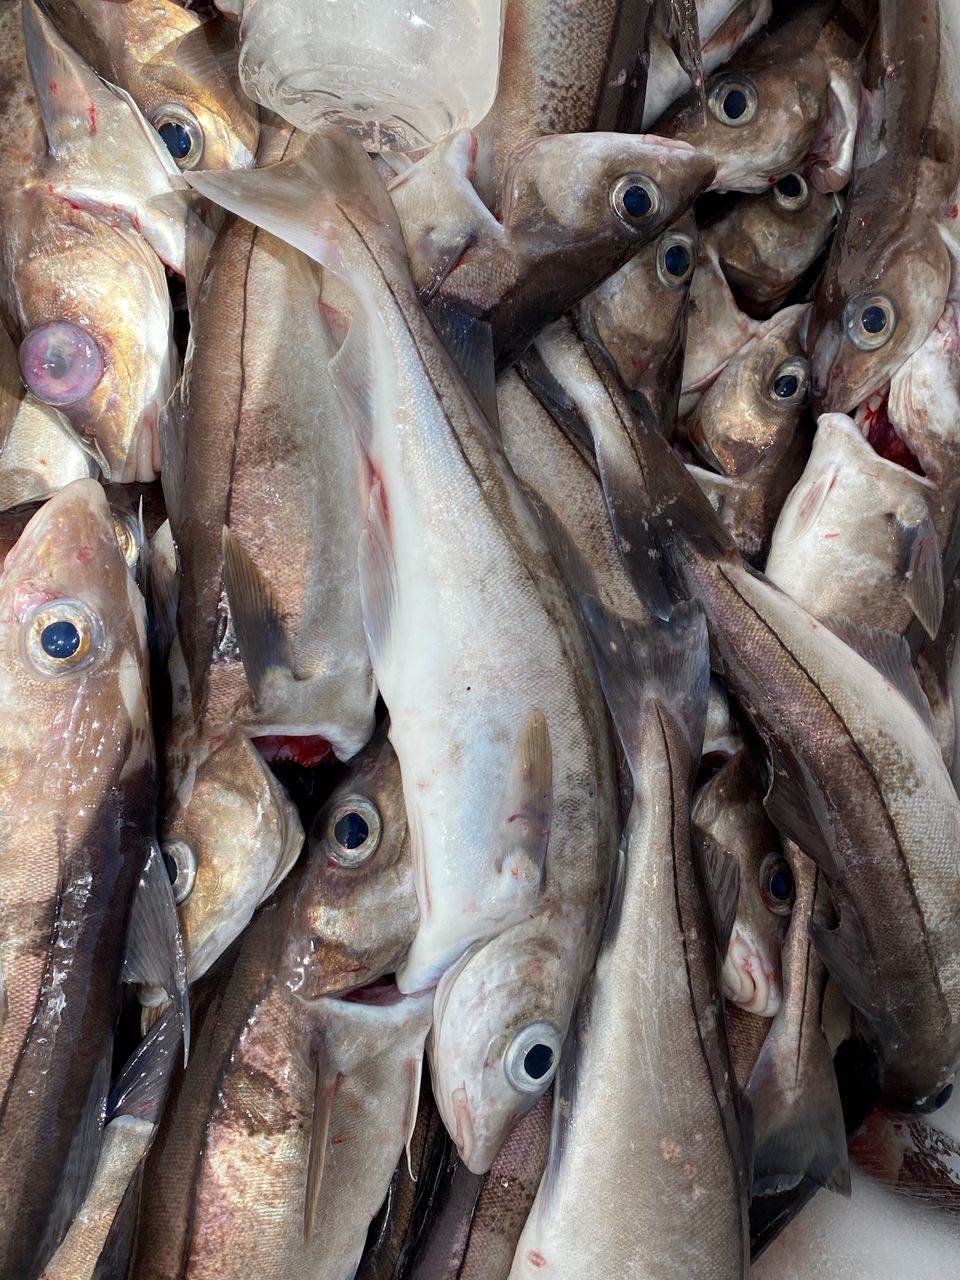 Pile of freshly caught haddock